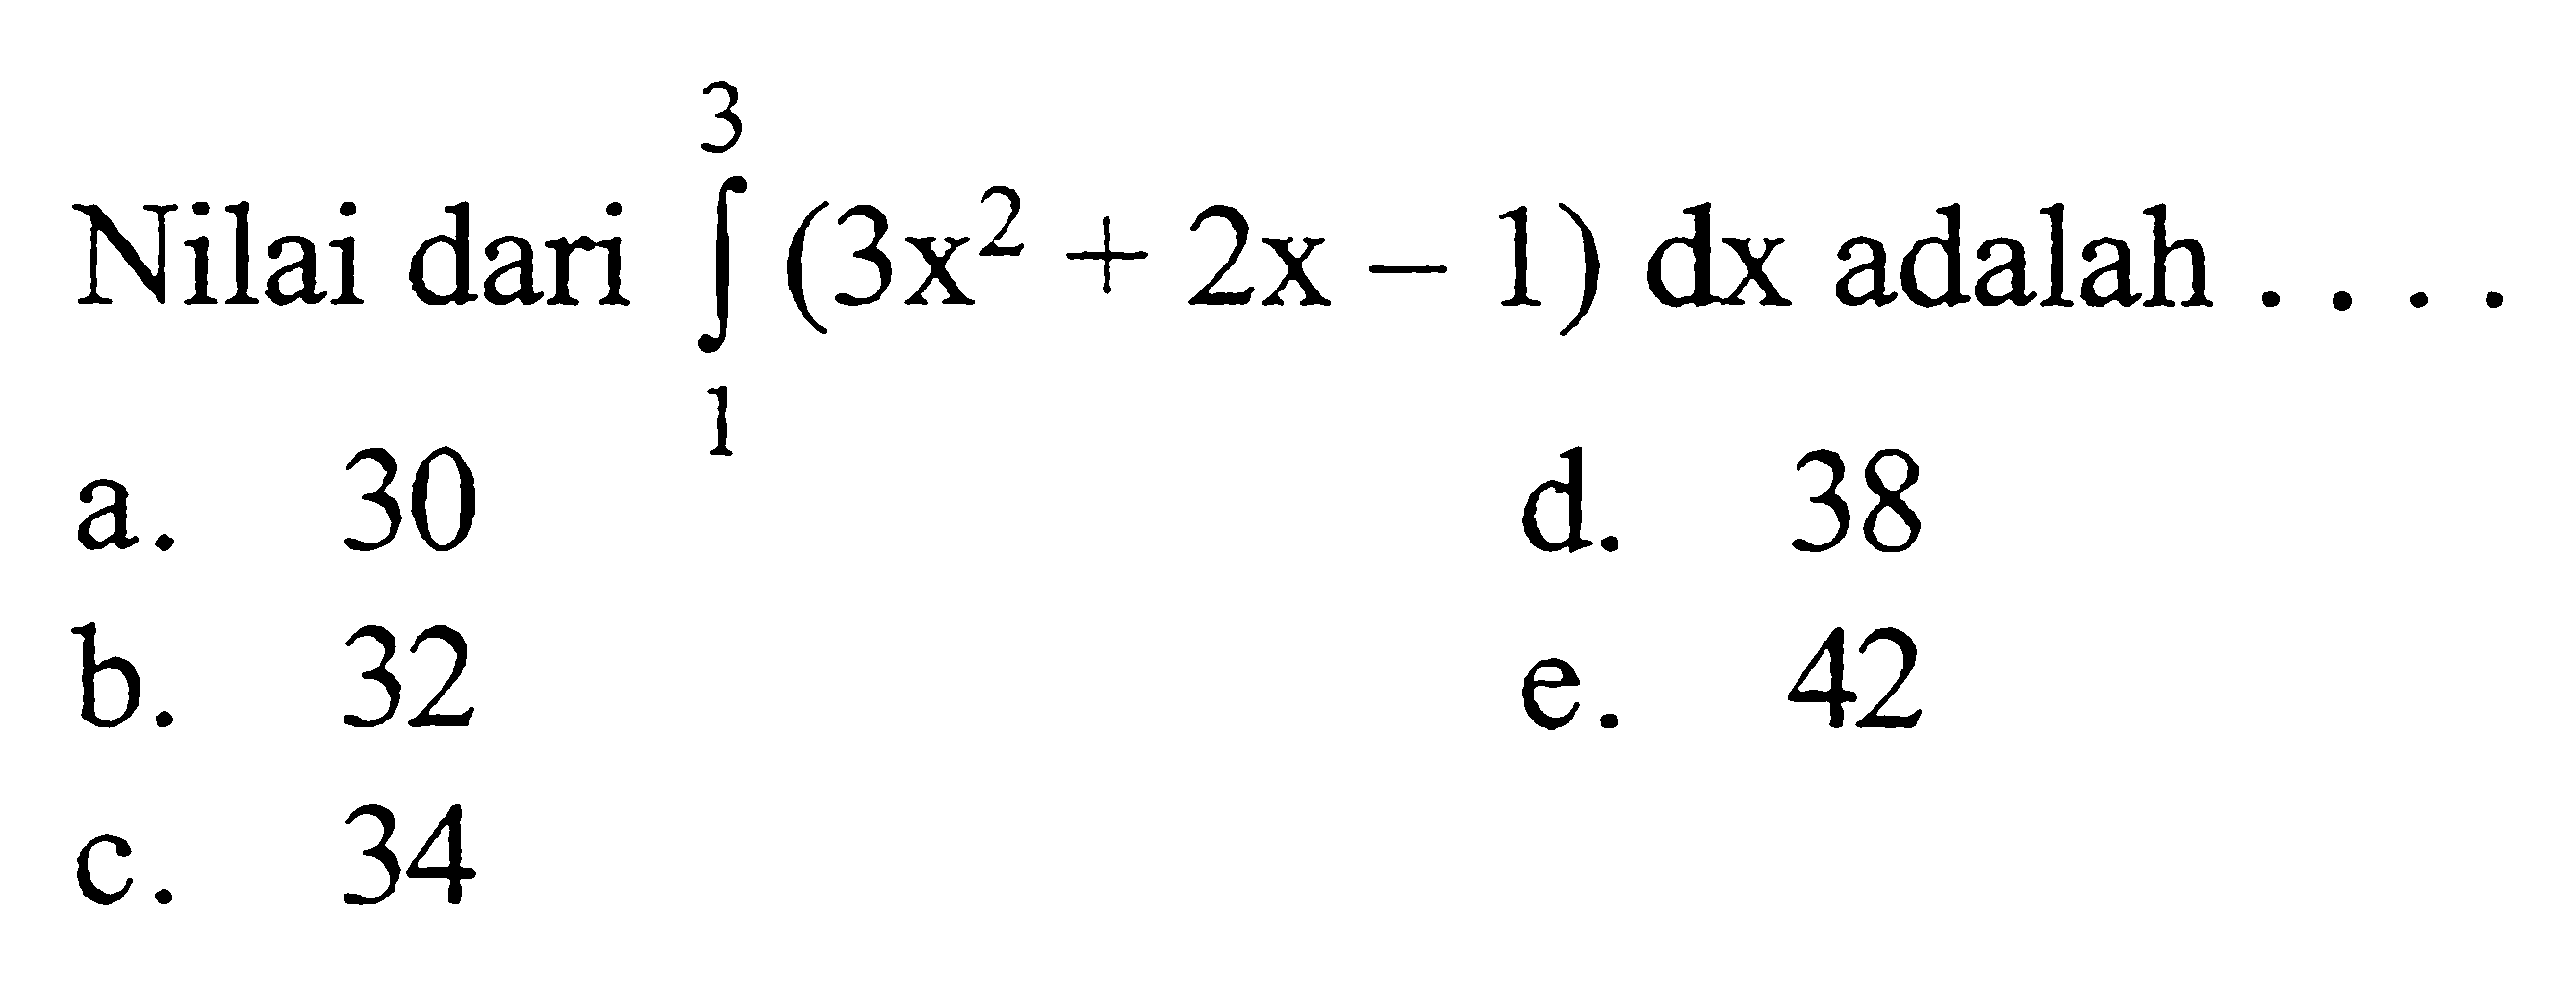 Nilai dari integral 1^3(3x^2+2x-1) dx  adalah  .... 